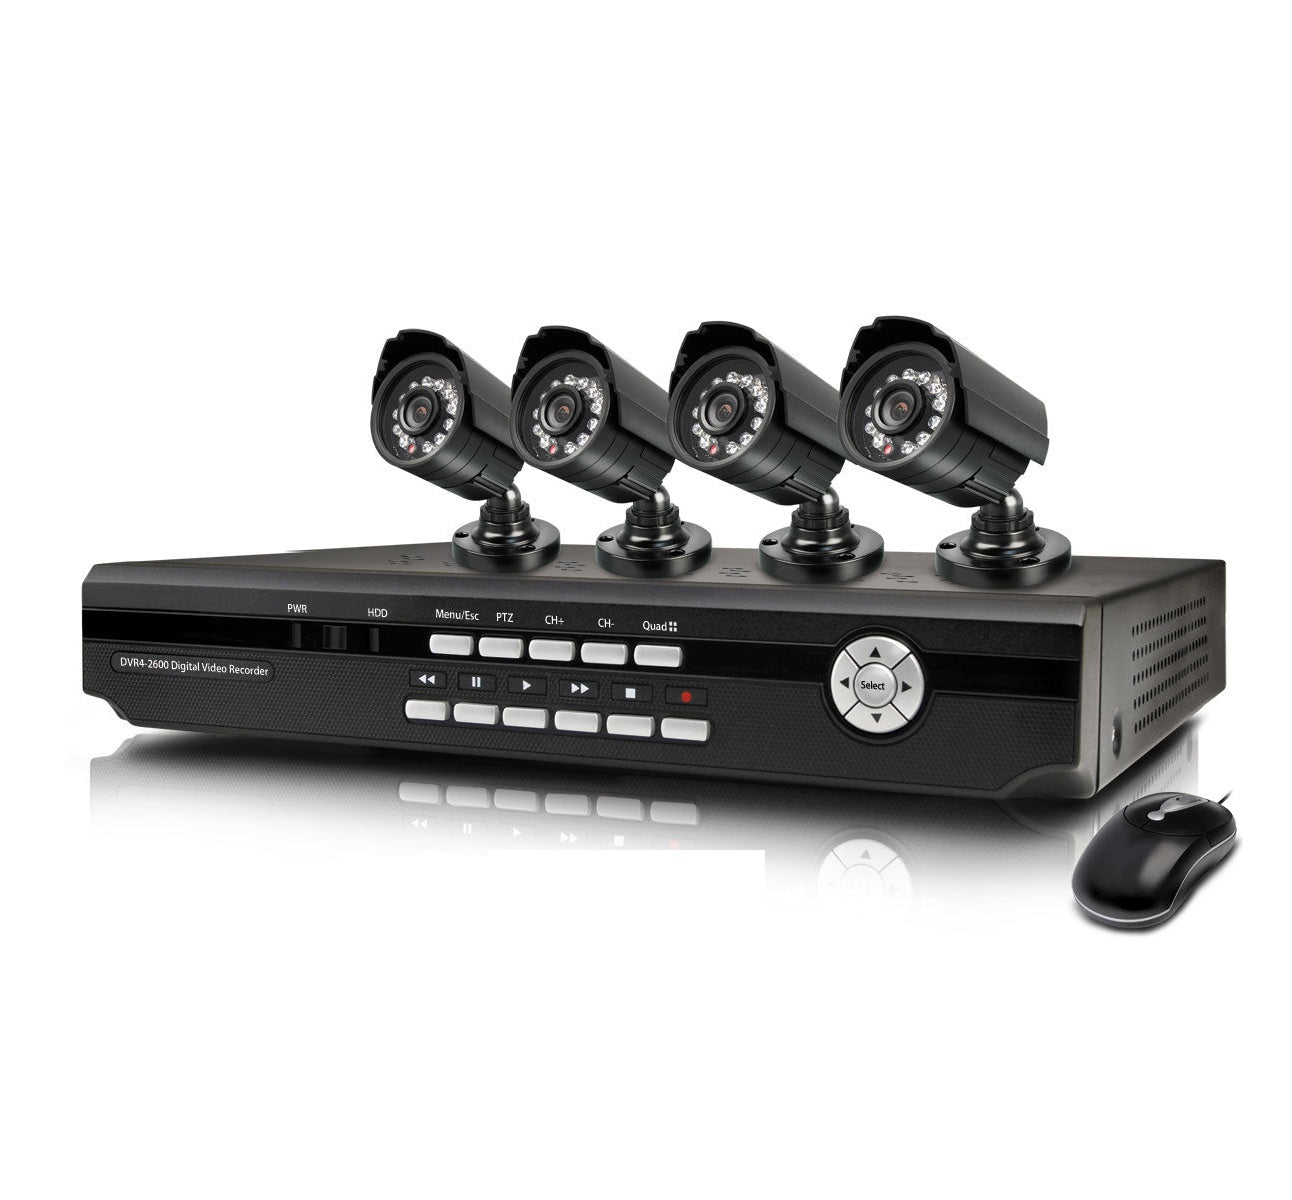 Sistem de Supraveghere Video, CCTV 4 Camere + Hard Disk 500GB